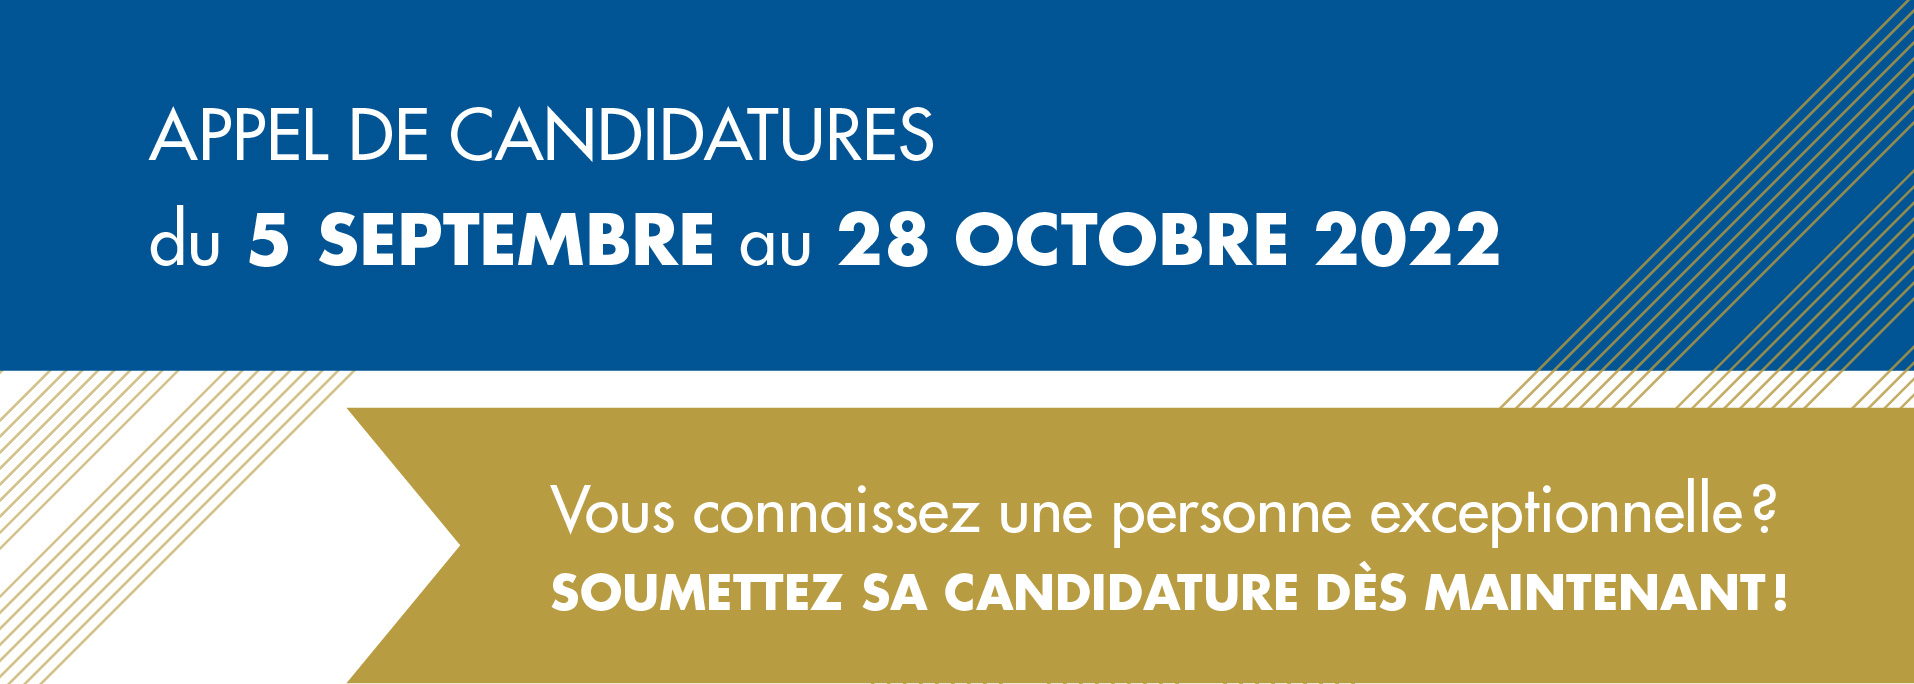 Appel de candidatures du 5 septembre au 28 octobre 2022.